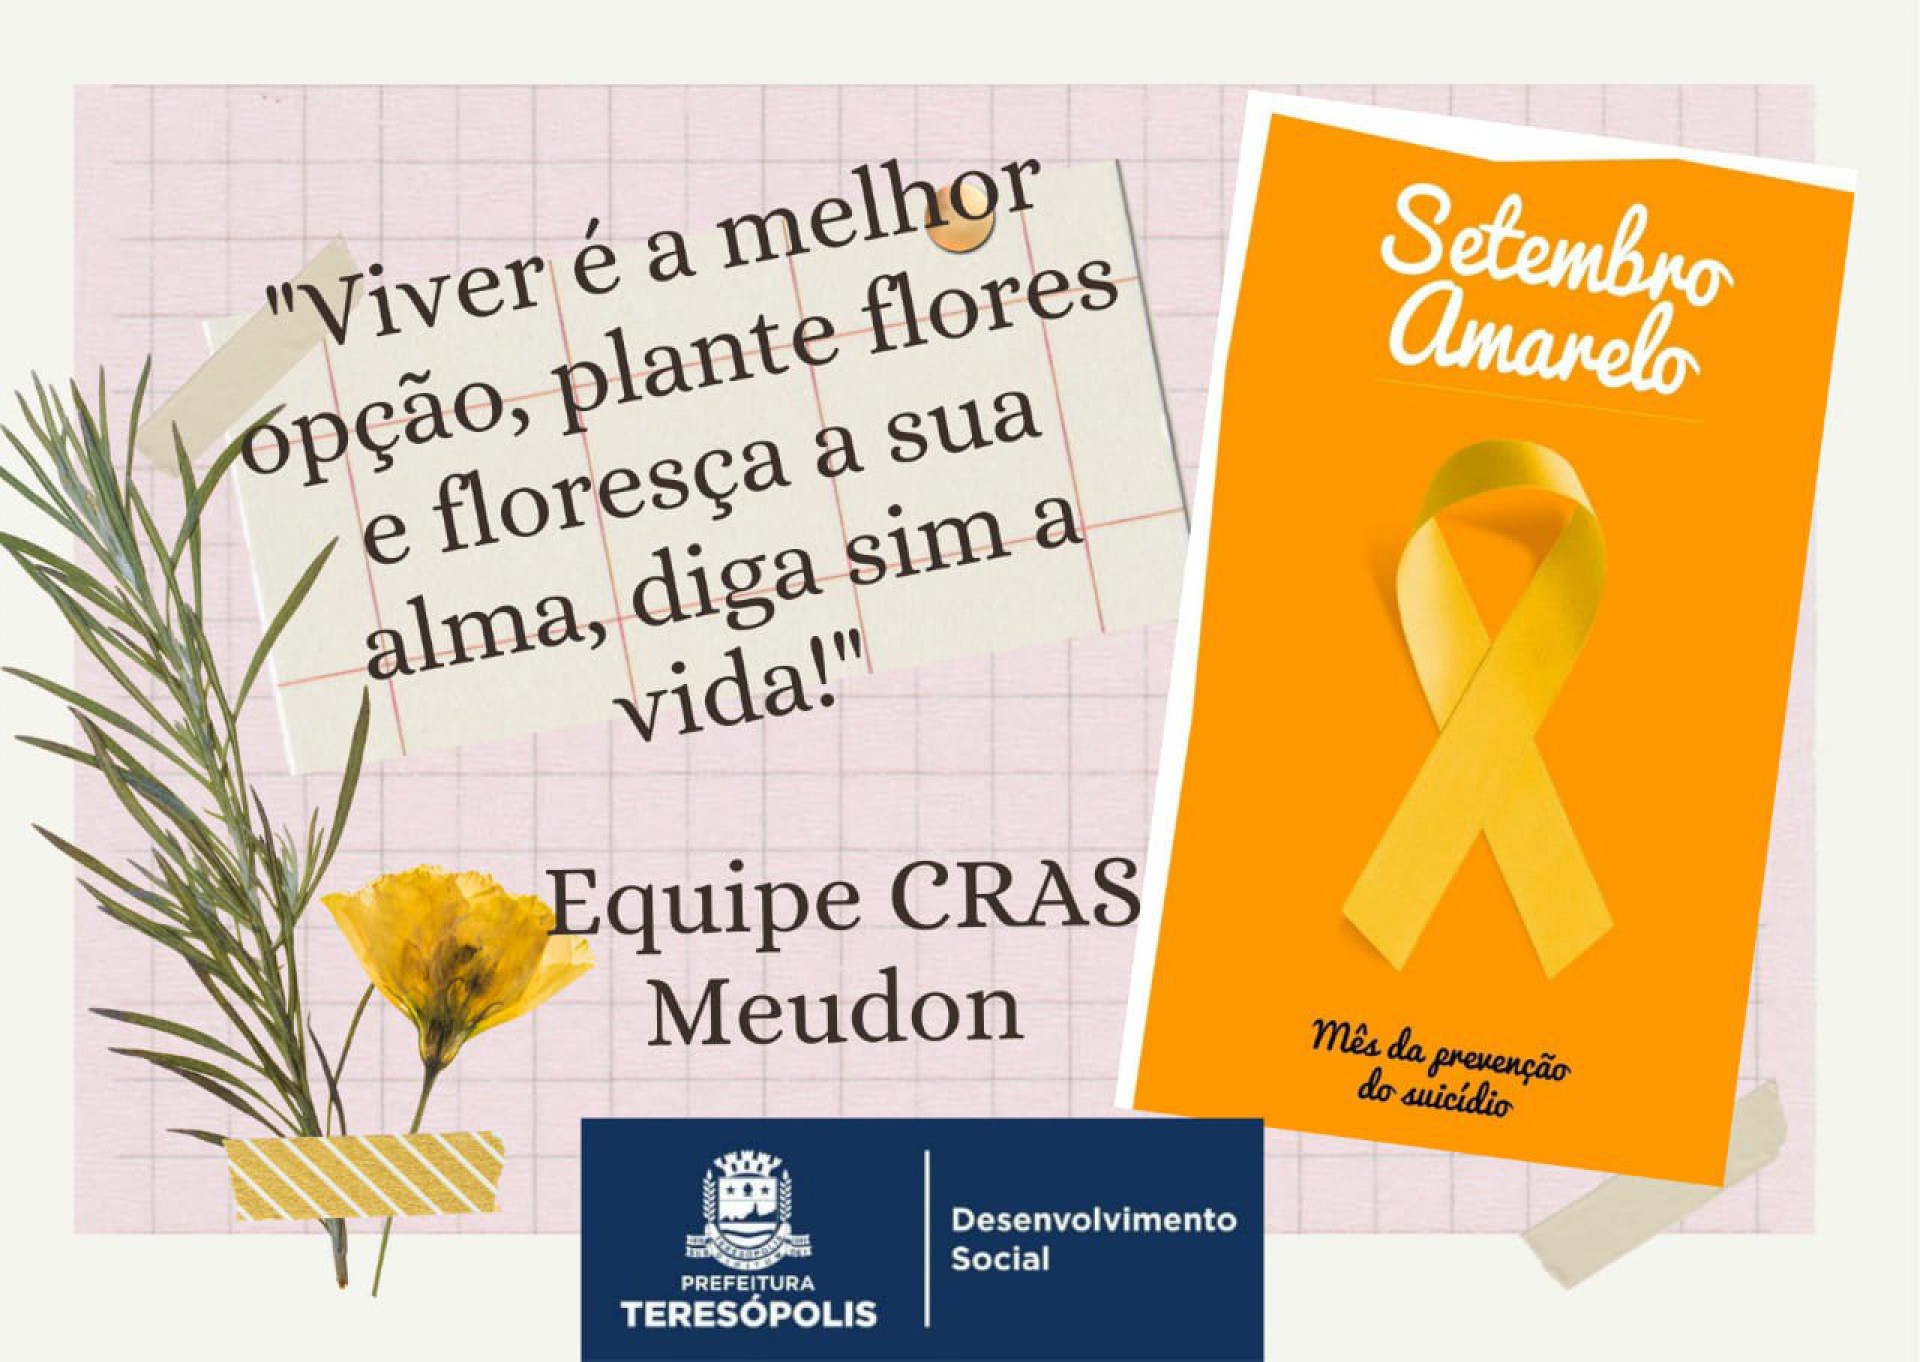 CRAS Meudon em Teresópolis realiza campanha de combate e prevenção ao suicídio